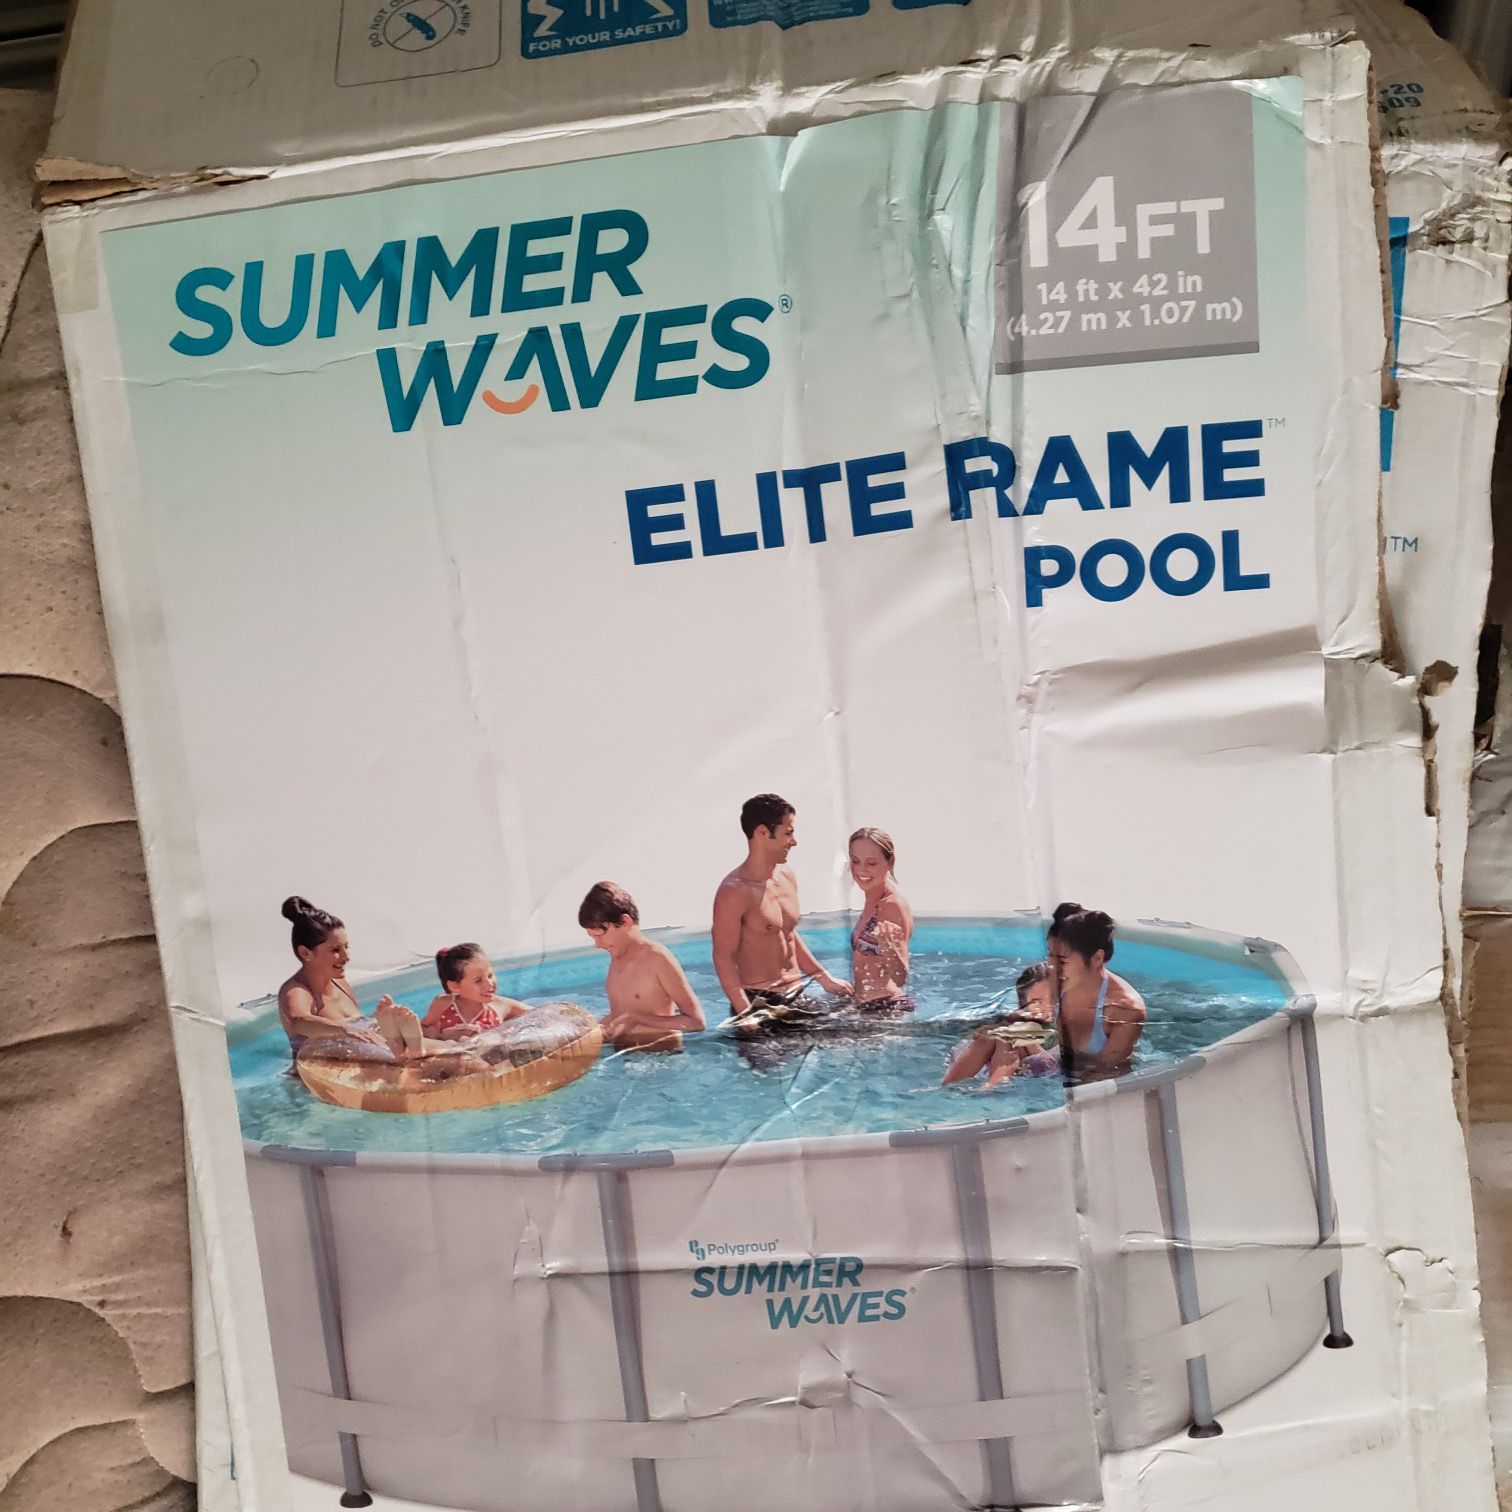 Sumer wave elite rame pool